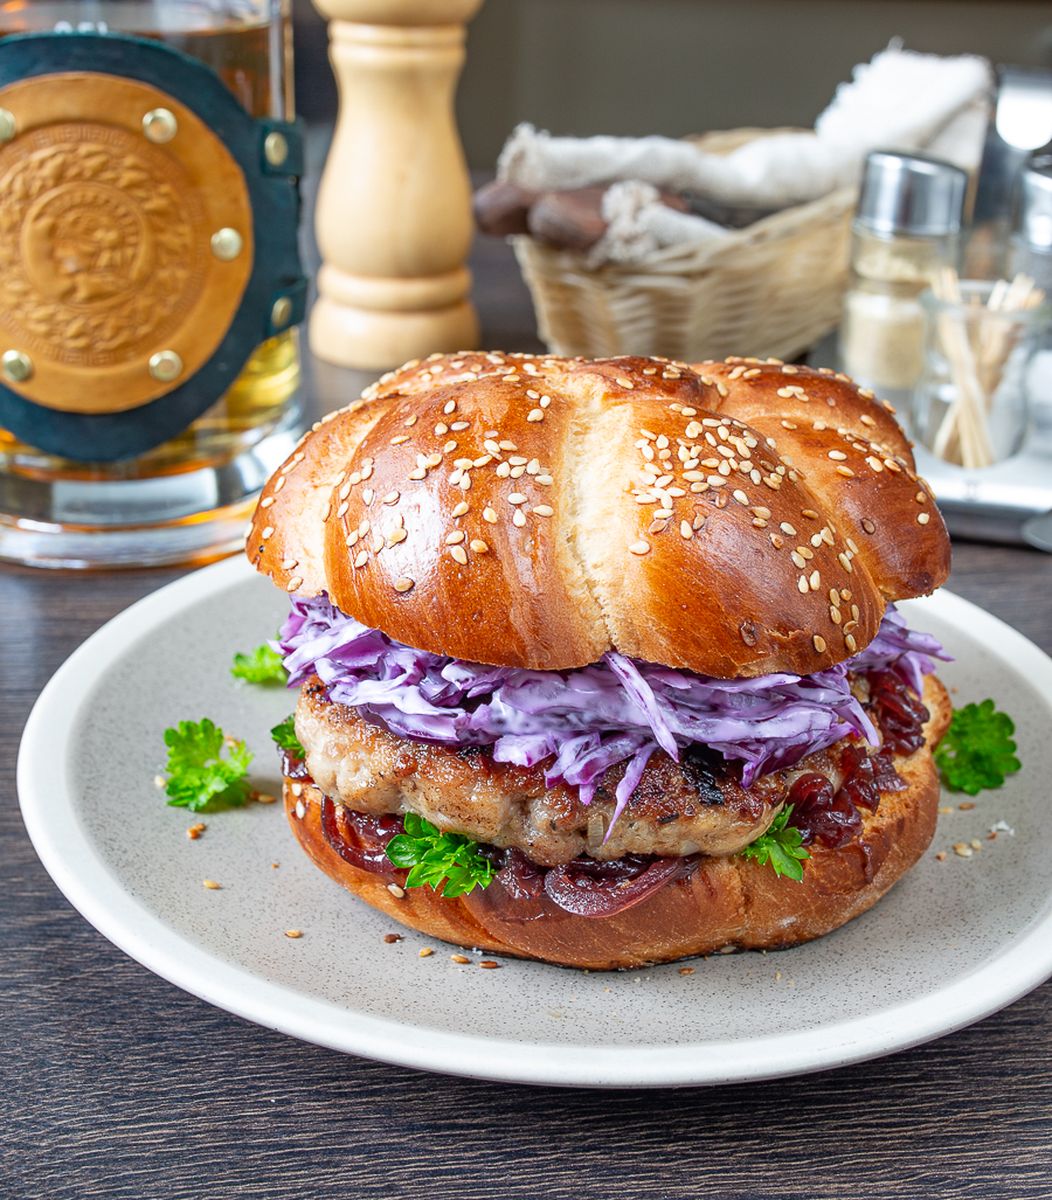 Рецепт бургера со свиной котлетой и сочным капустным салатом с фото  пошагово на Вкусном Блоге